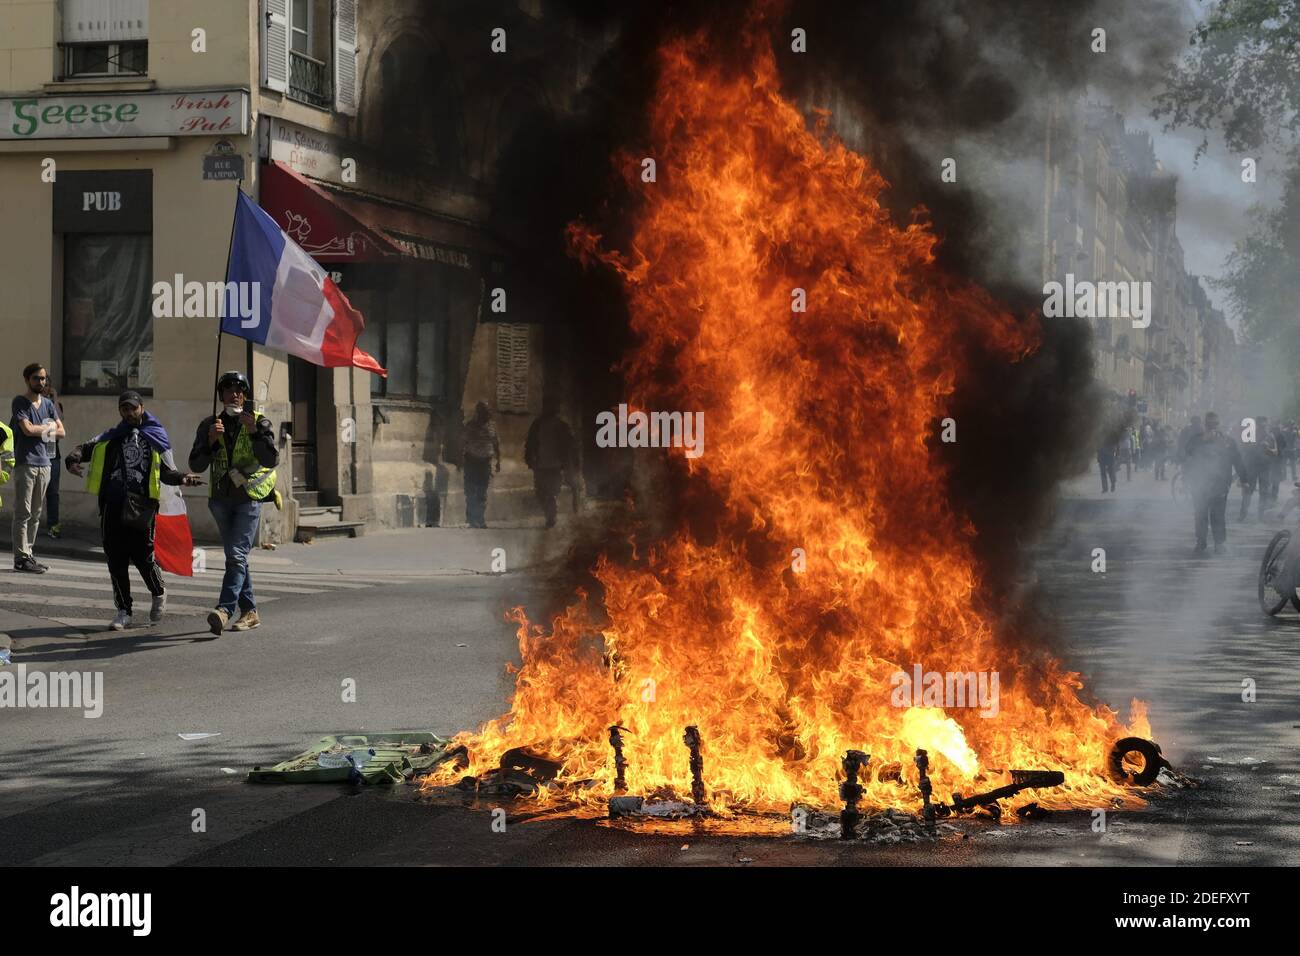 Eine brennende Barrikade während einer regierungsfeindlichen Demonstration, Akt XXIII', die von der Bewegung "Gelbwesten" (Gilets Jaunes) für den 23. Nationalen Protest in Folge gegen die Politik Emmanuel Macrons und seinen Top-Down-Regierungsstil, hohe Lebenshaltungskosten, Steuerreformen der Regierung und für mehr "soziale und wirtschaftliche Gerechtigkeit" genannt wurde. Demonstranten schlugen auf den Straßen der französischen Stadt ein und markierten vier Monate lang Proteste der "Gelbwesten", da eine Umfrage jetzt nahelegt, dass der Großteil des Landes will, dass sie aufhören. Paris, Frankreich, 20. April 2019. Foto von Alfred Yaghobzadeh/ABACAPRESS.COM Stockfoto